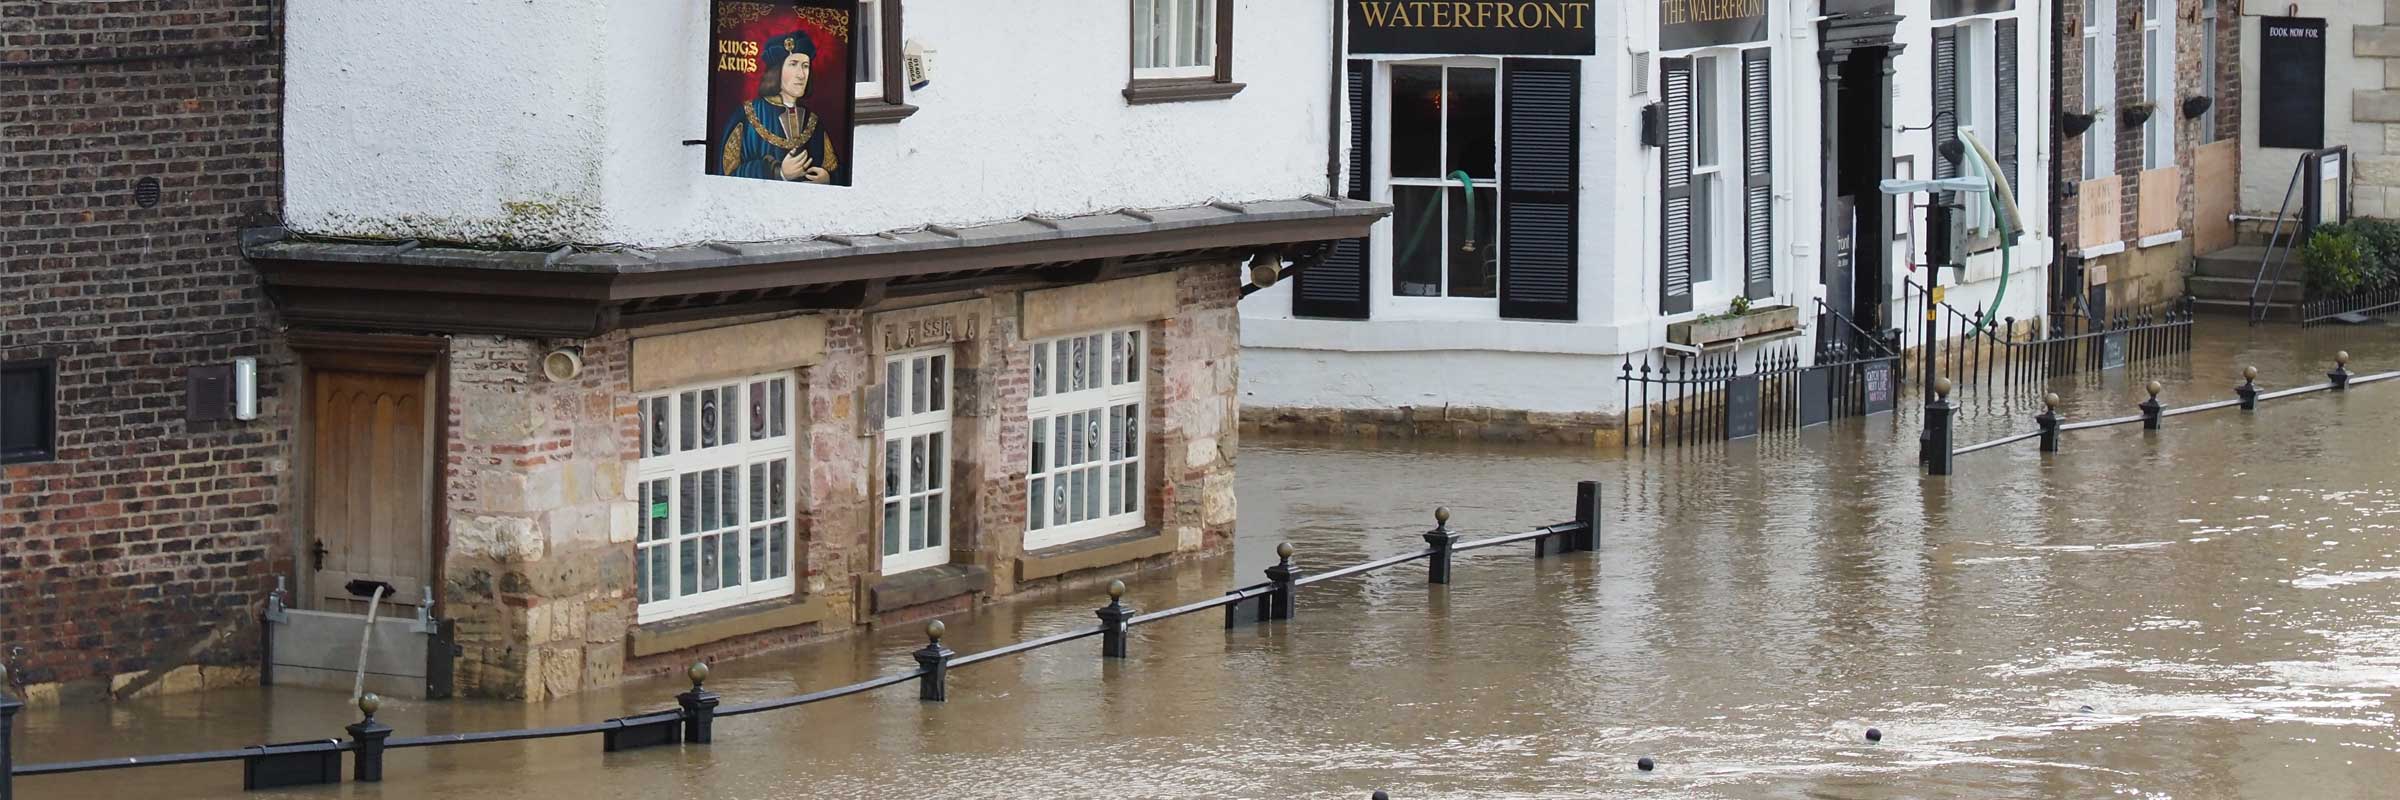 Flood water in York at riverside